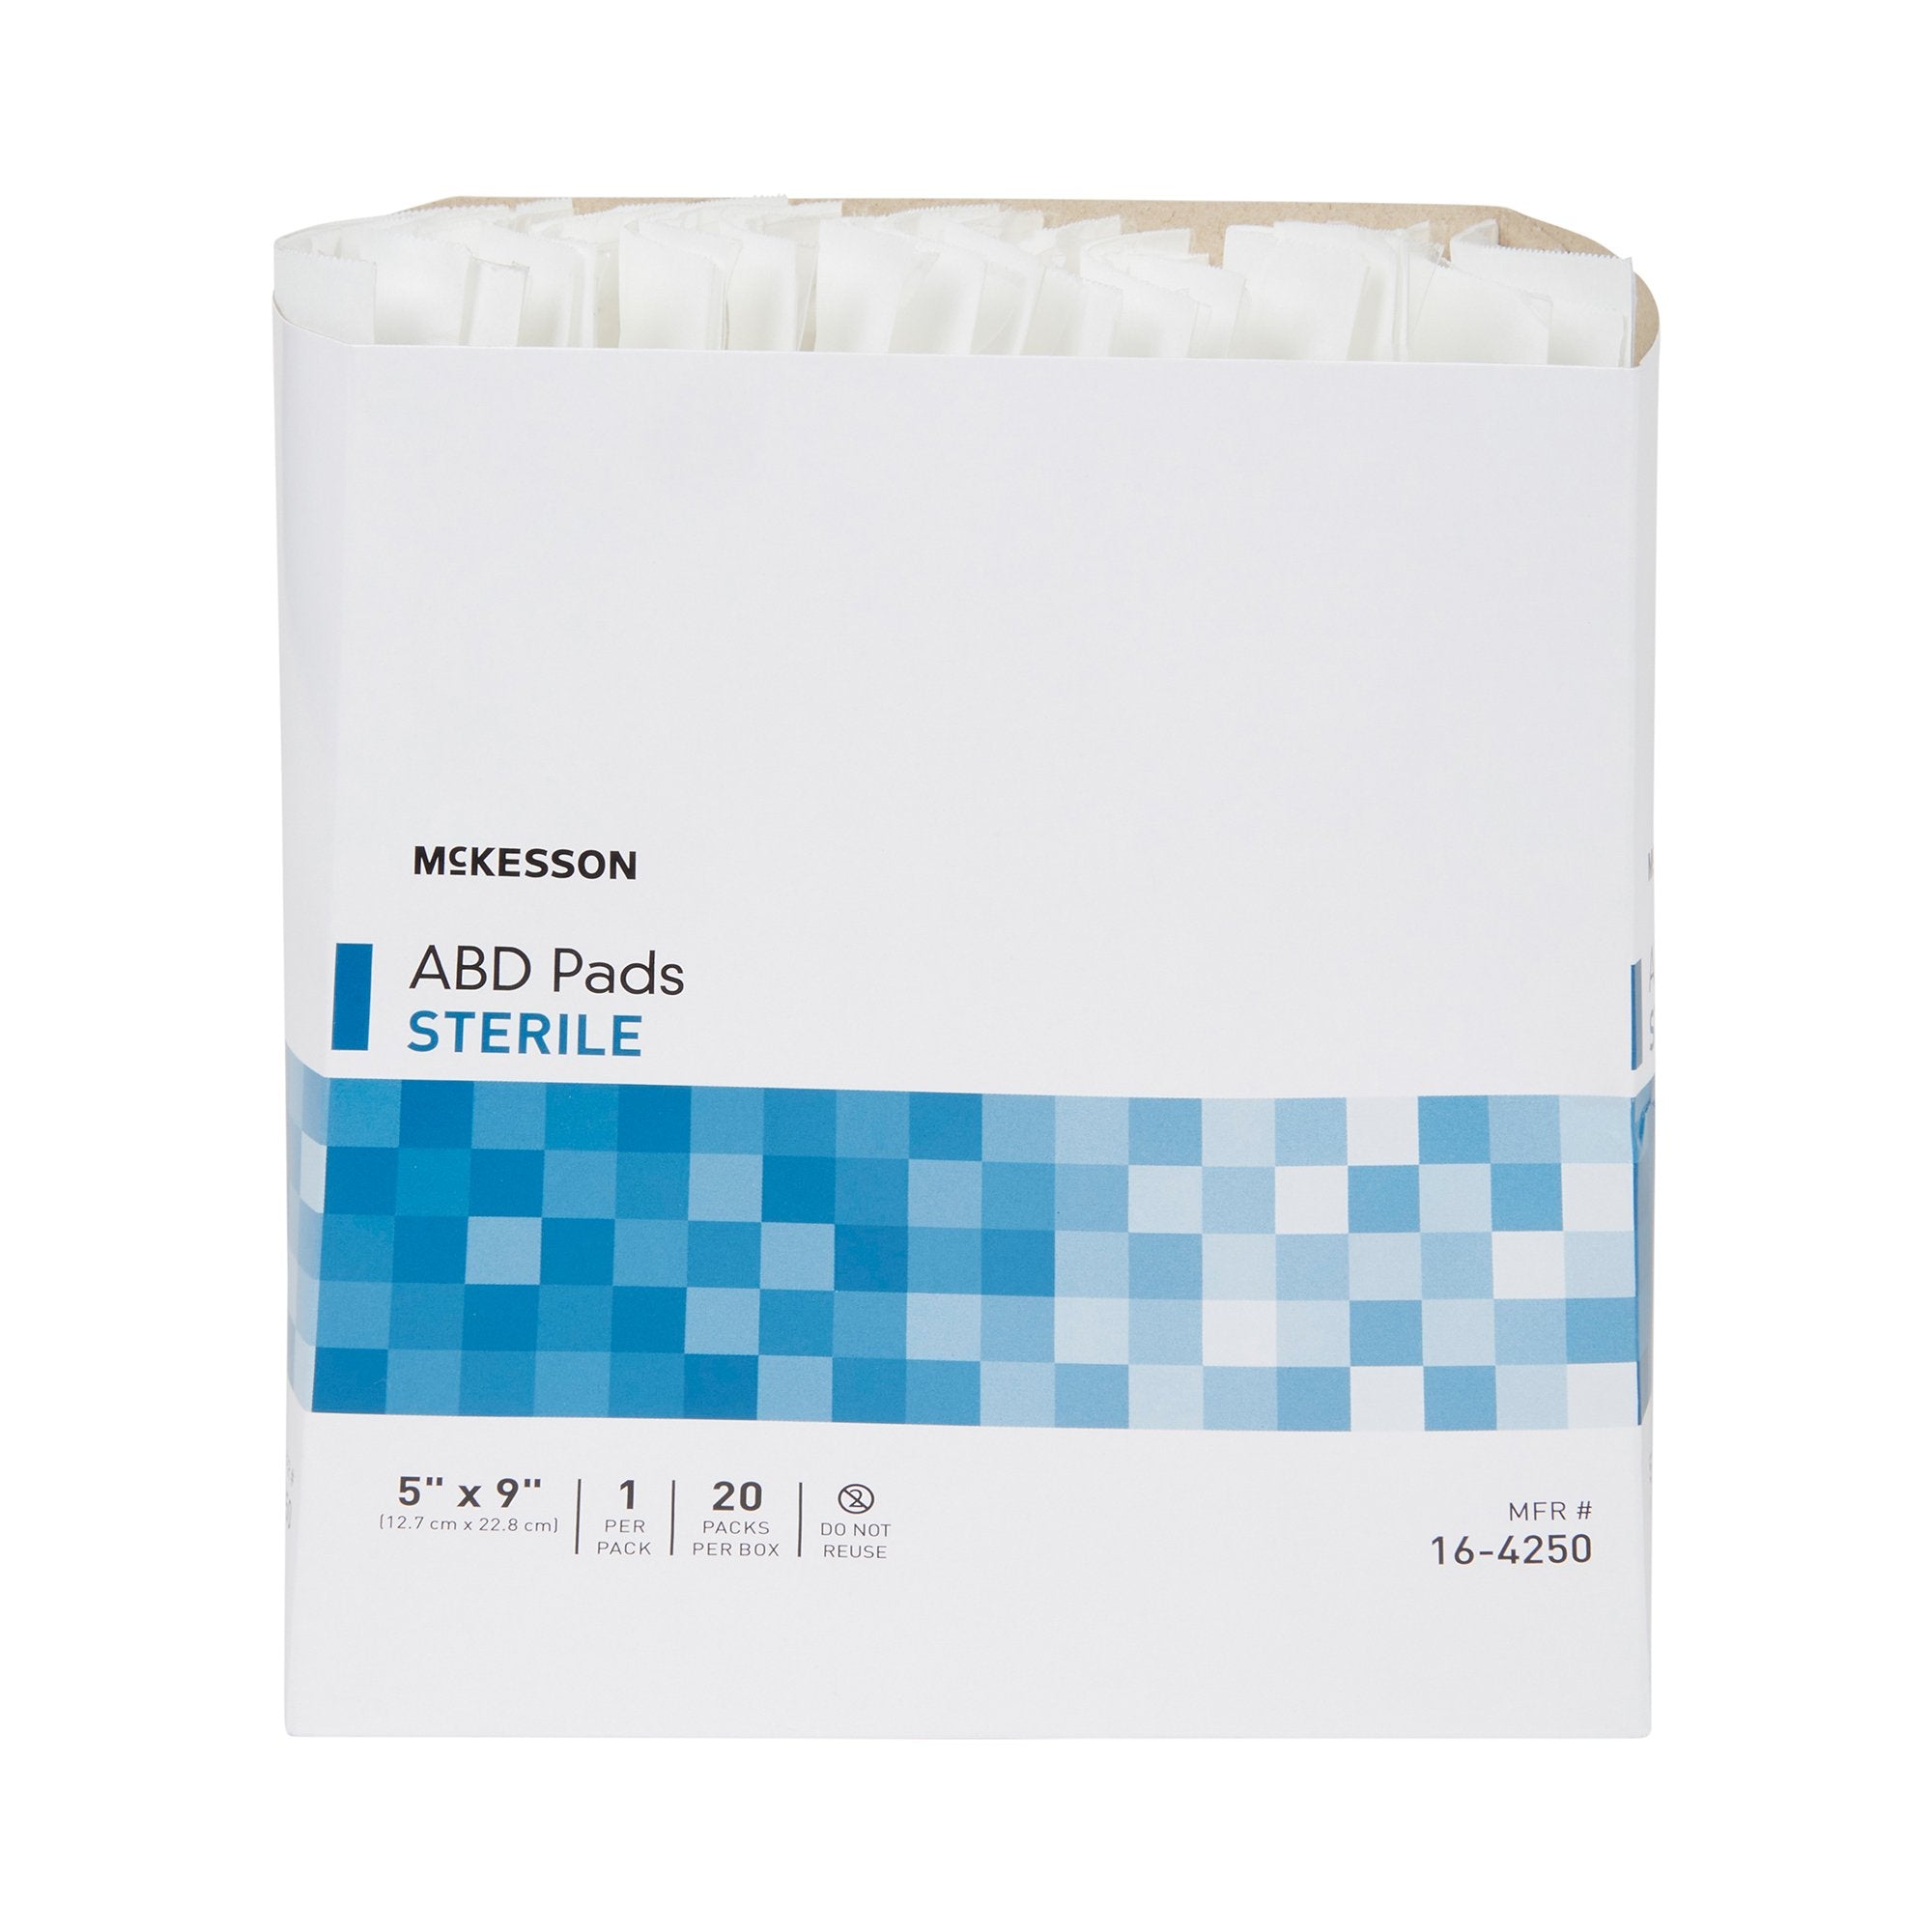 Abdominal Pad McKesson 5 X 9 Inch 1 per Pack Sterile Rectangle